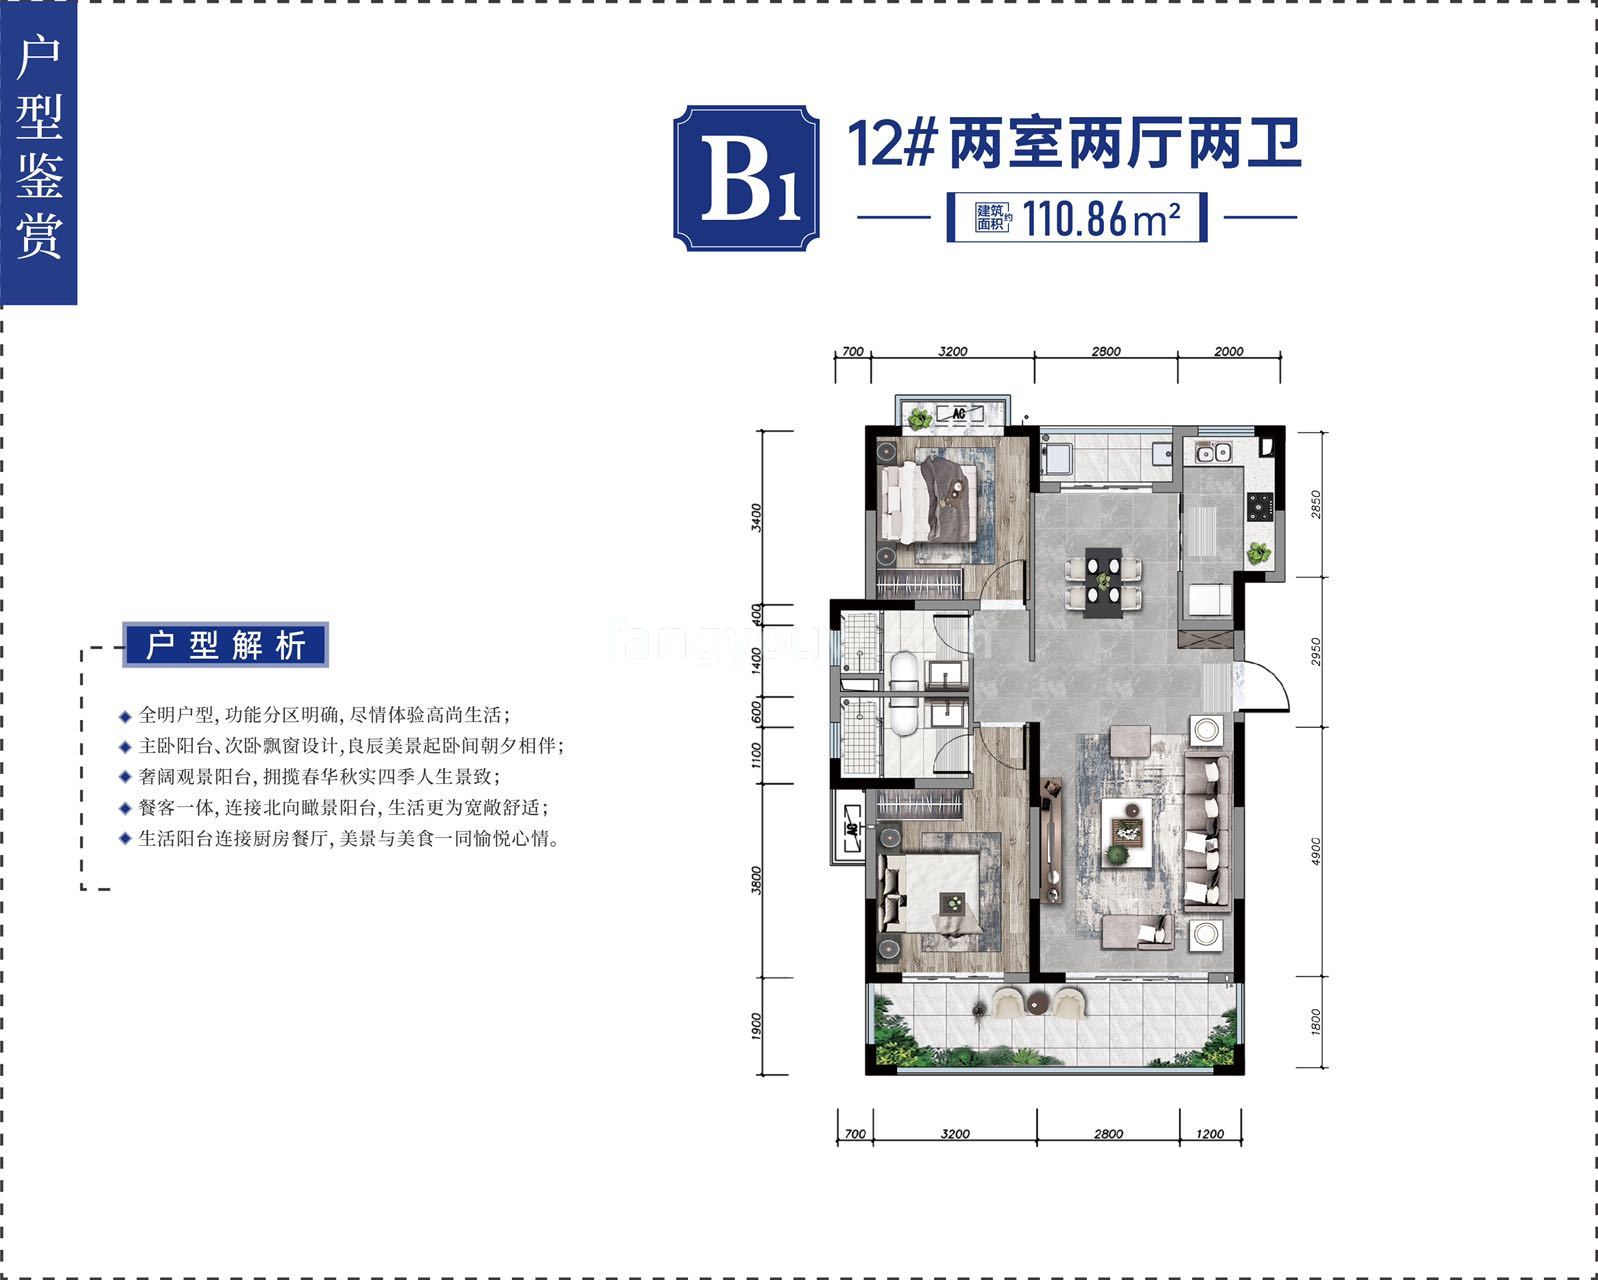 龙海泉城 小高层 B1户型 两室两厅两卫 建筑面积110.86㎡